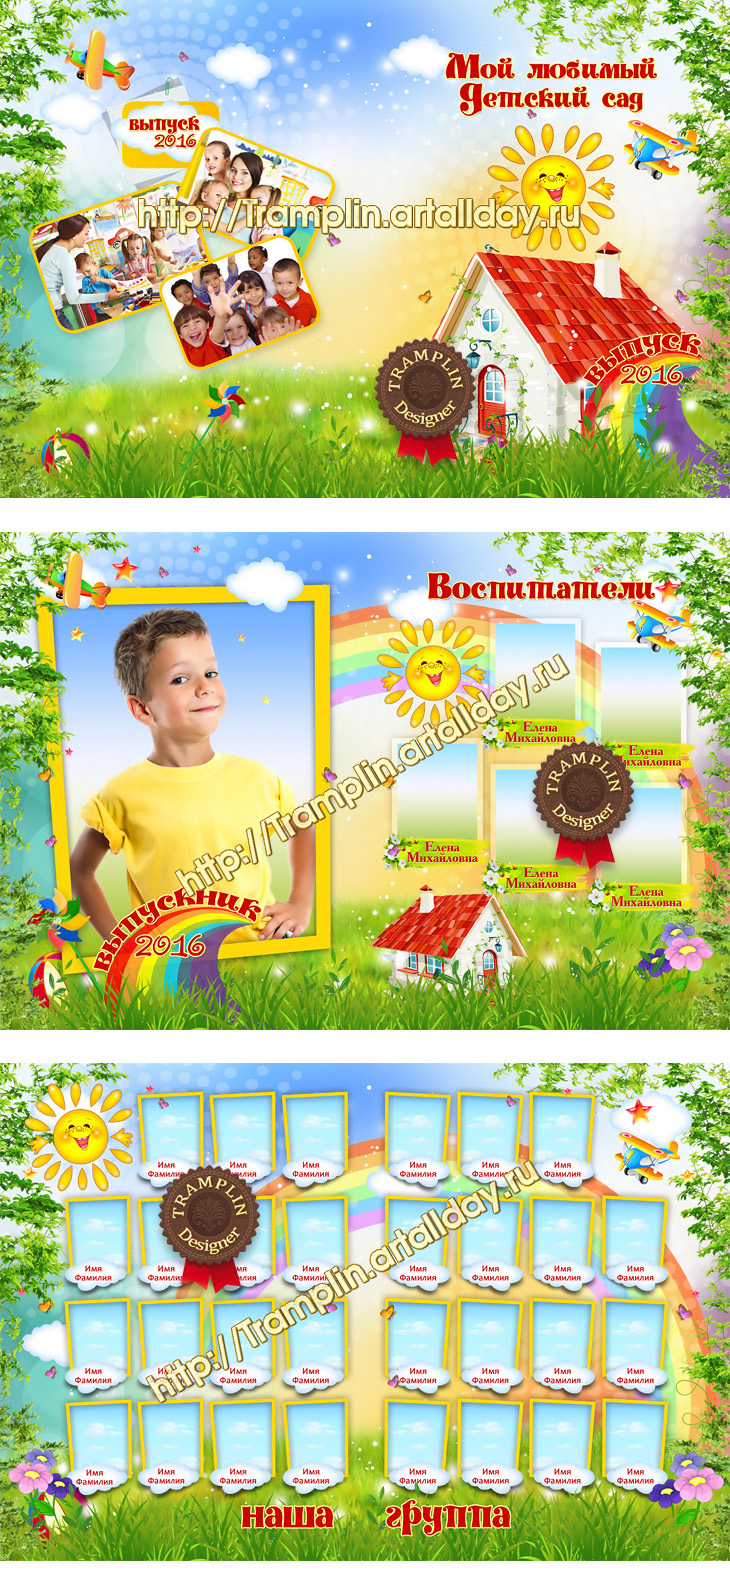 Фотопланшет для детского сада Солнечная полянка